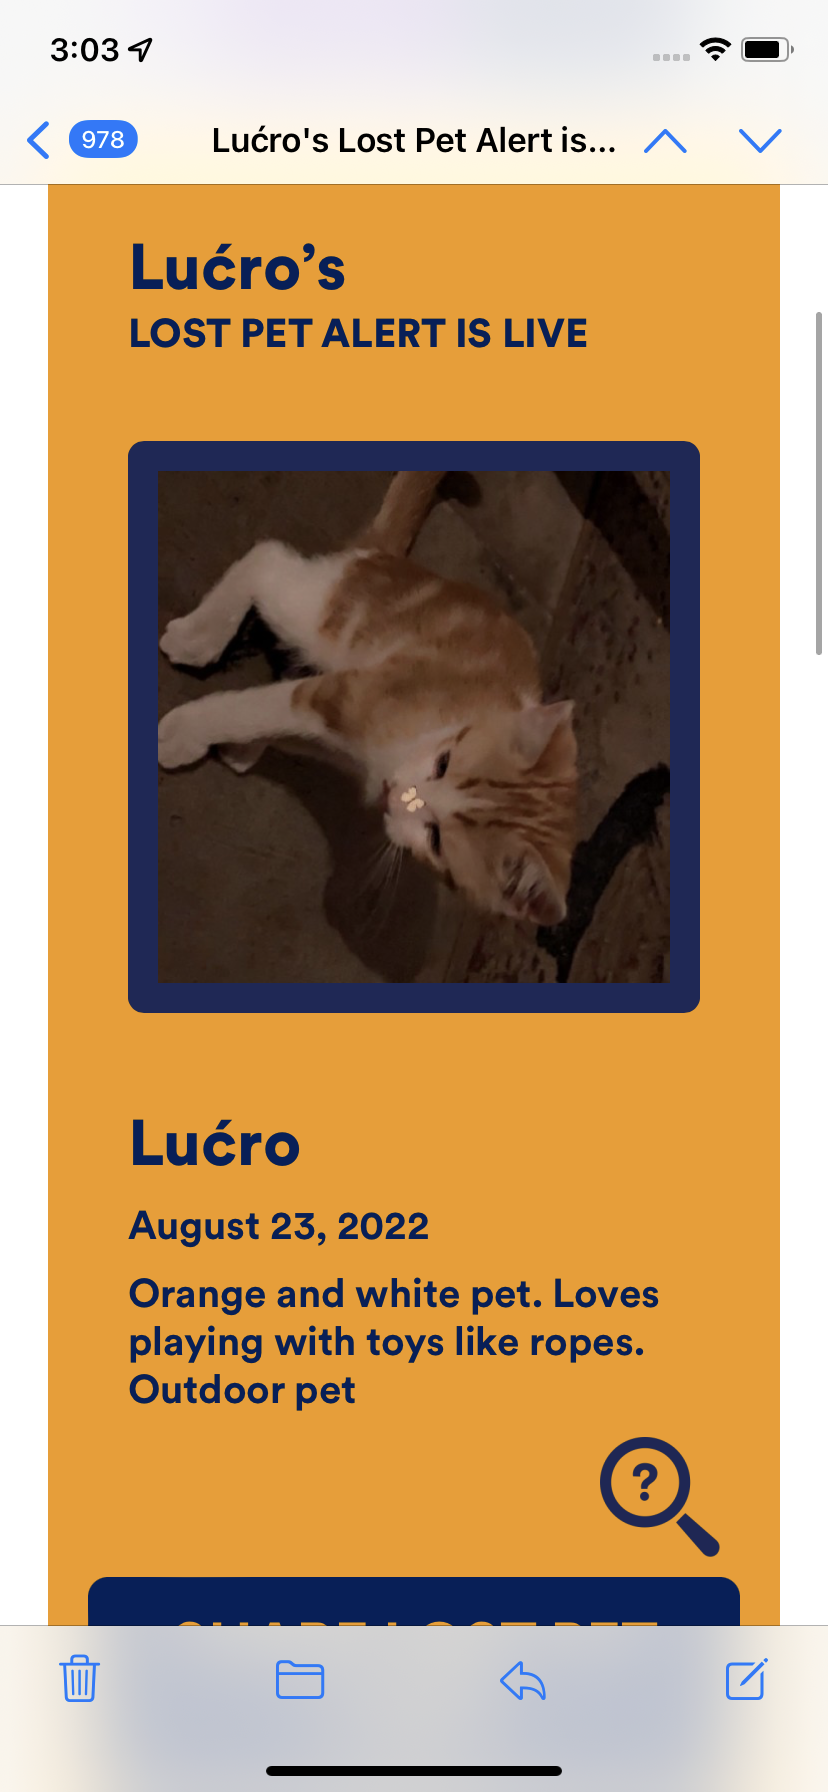 Image of Lu?ero, Lost Cat